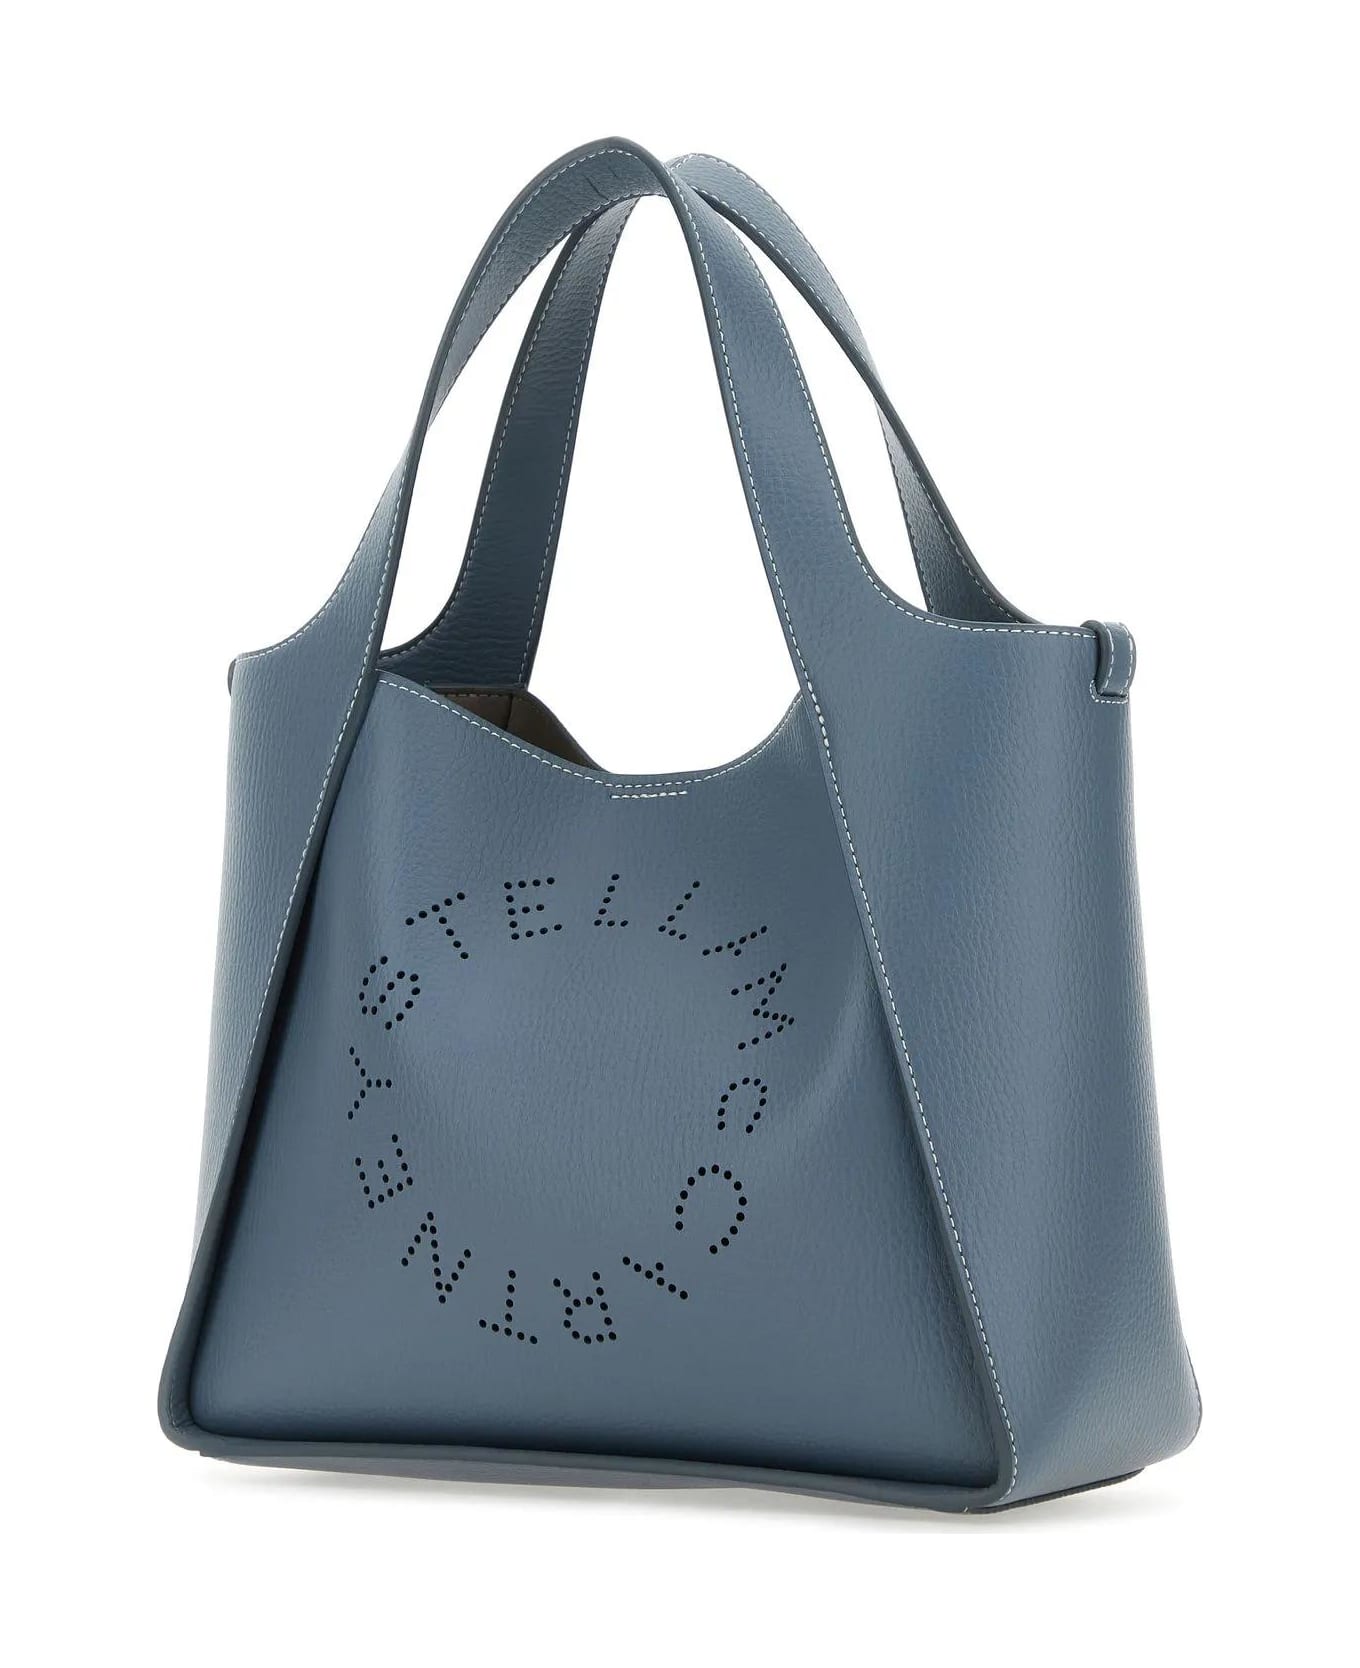 Stella McCartney Shoulder Bag With Logo - Blue Grey トートバッグ